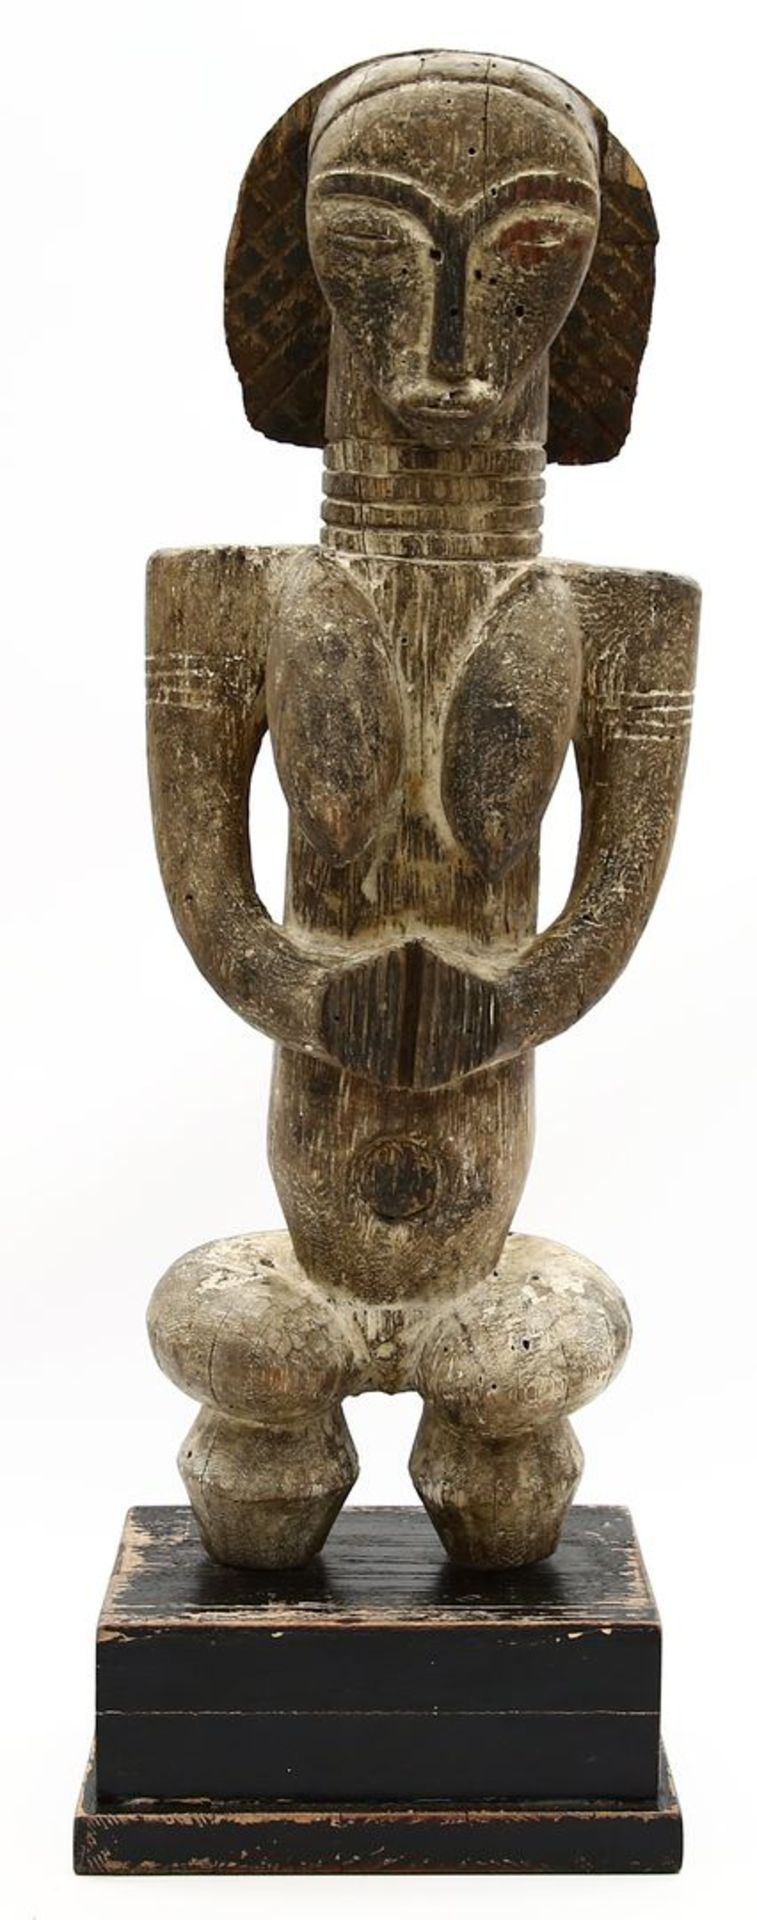 Skulptur eines Reliquienwächters "Byeri".